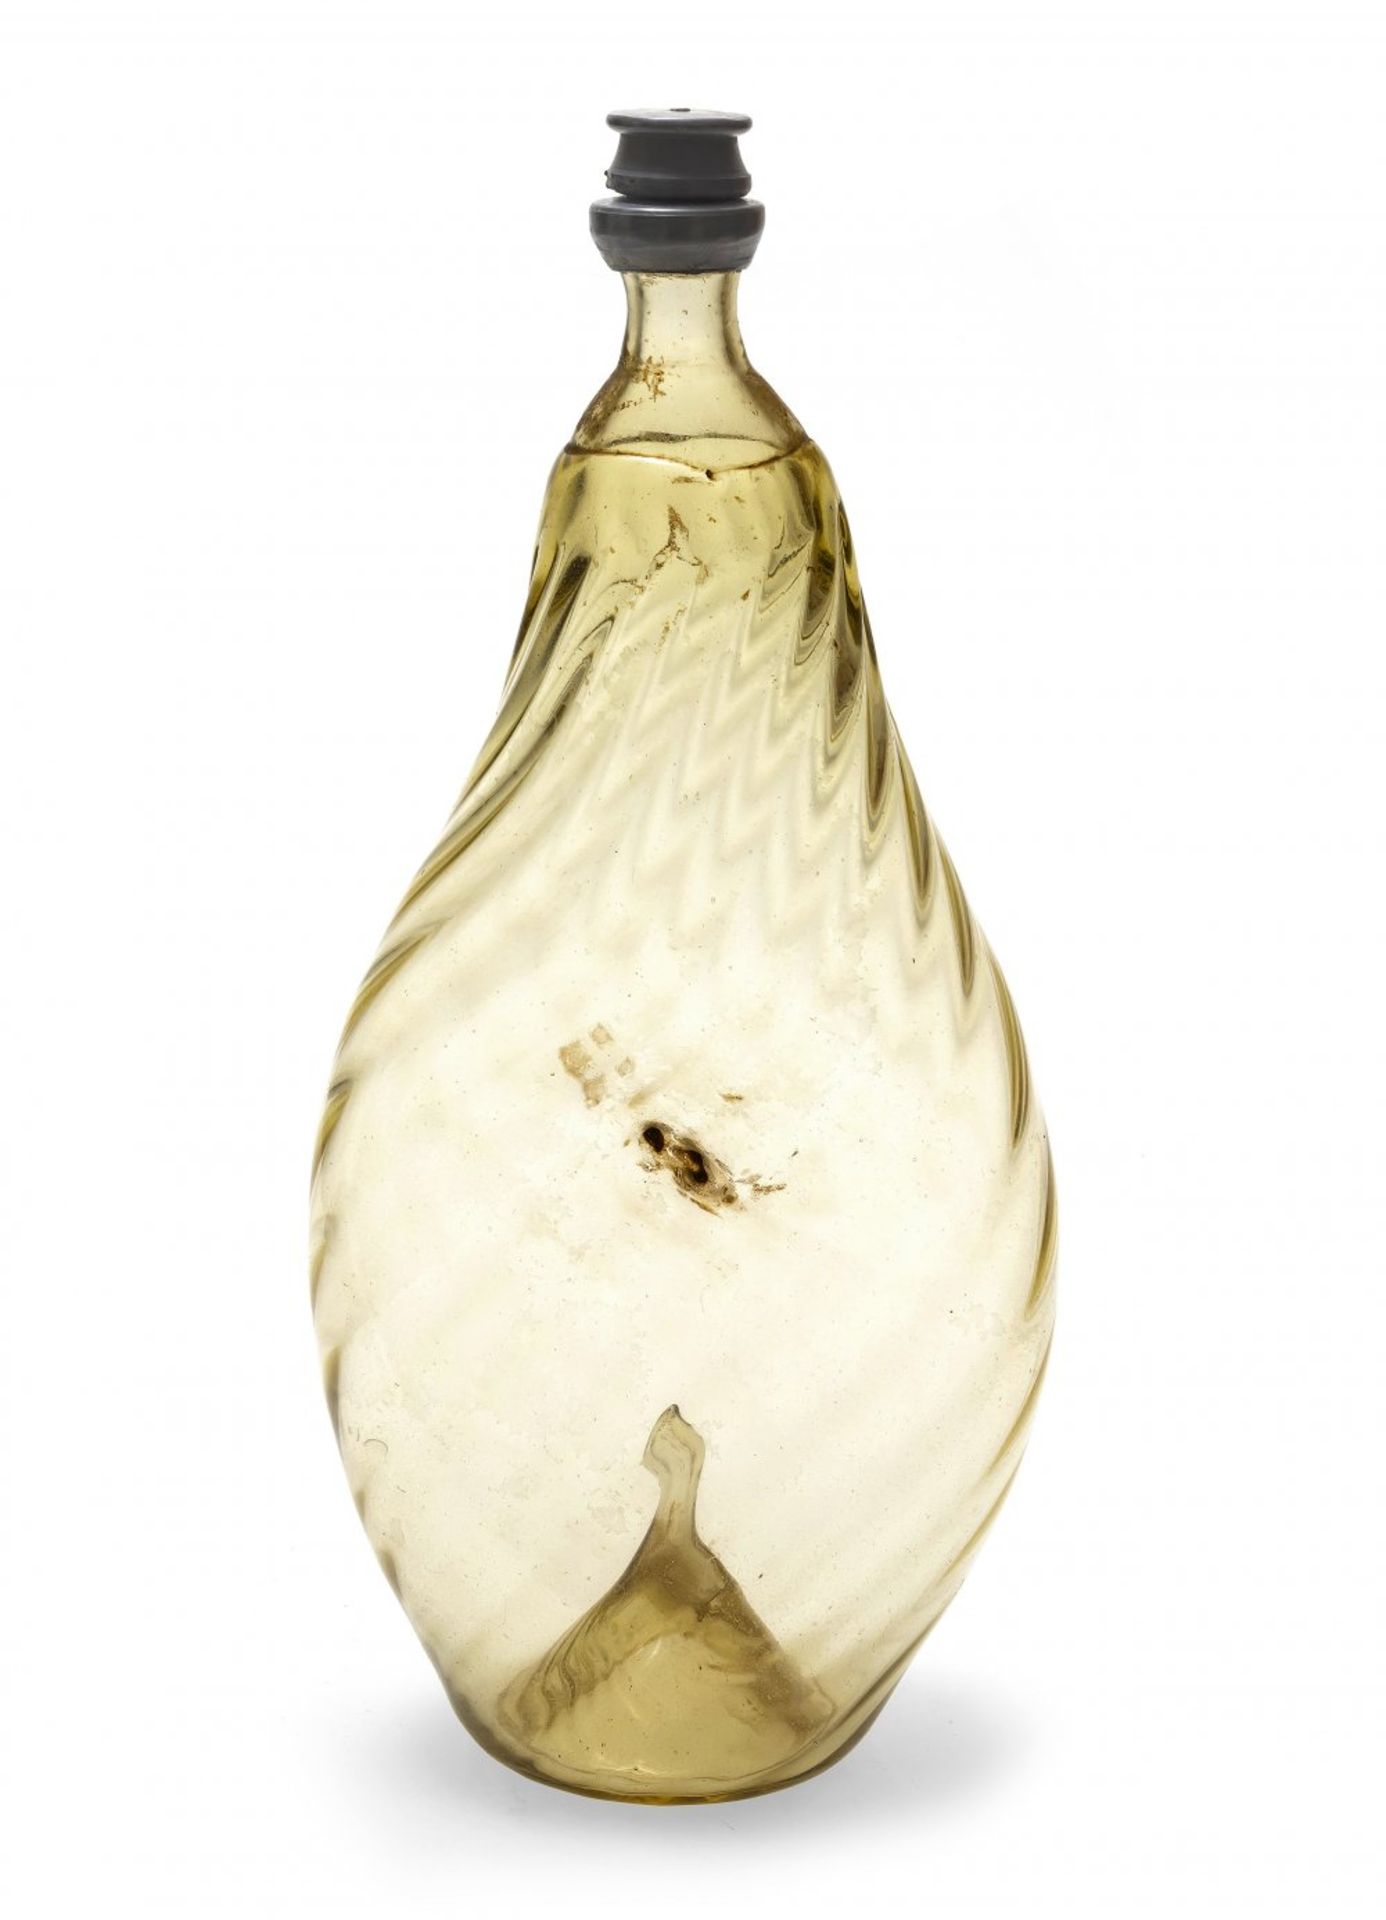 NabelflascheTirol. Farbloses, leicht gelbstichiges Glas, Zinnschraubverschluss. H. 27 cm.navel